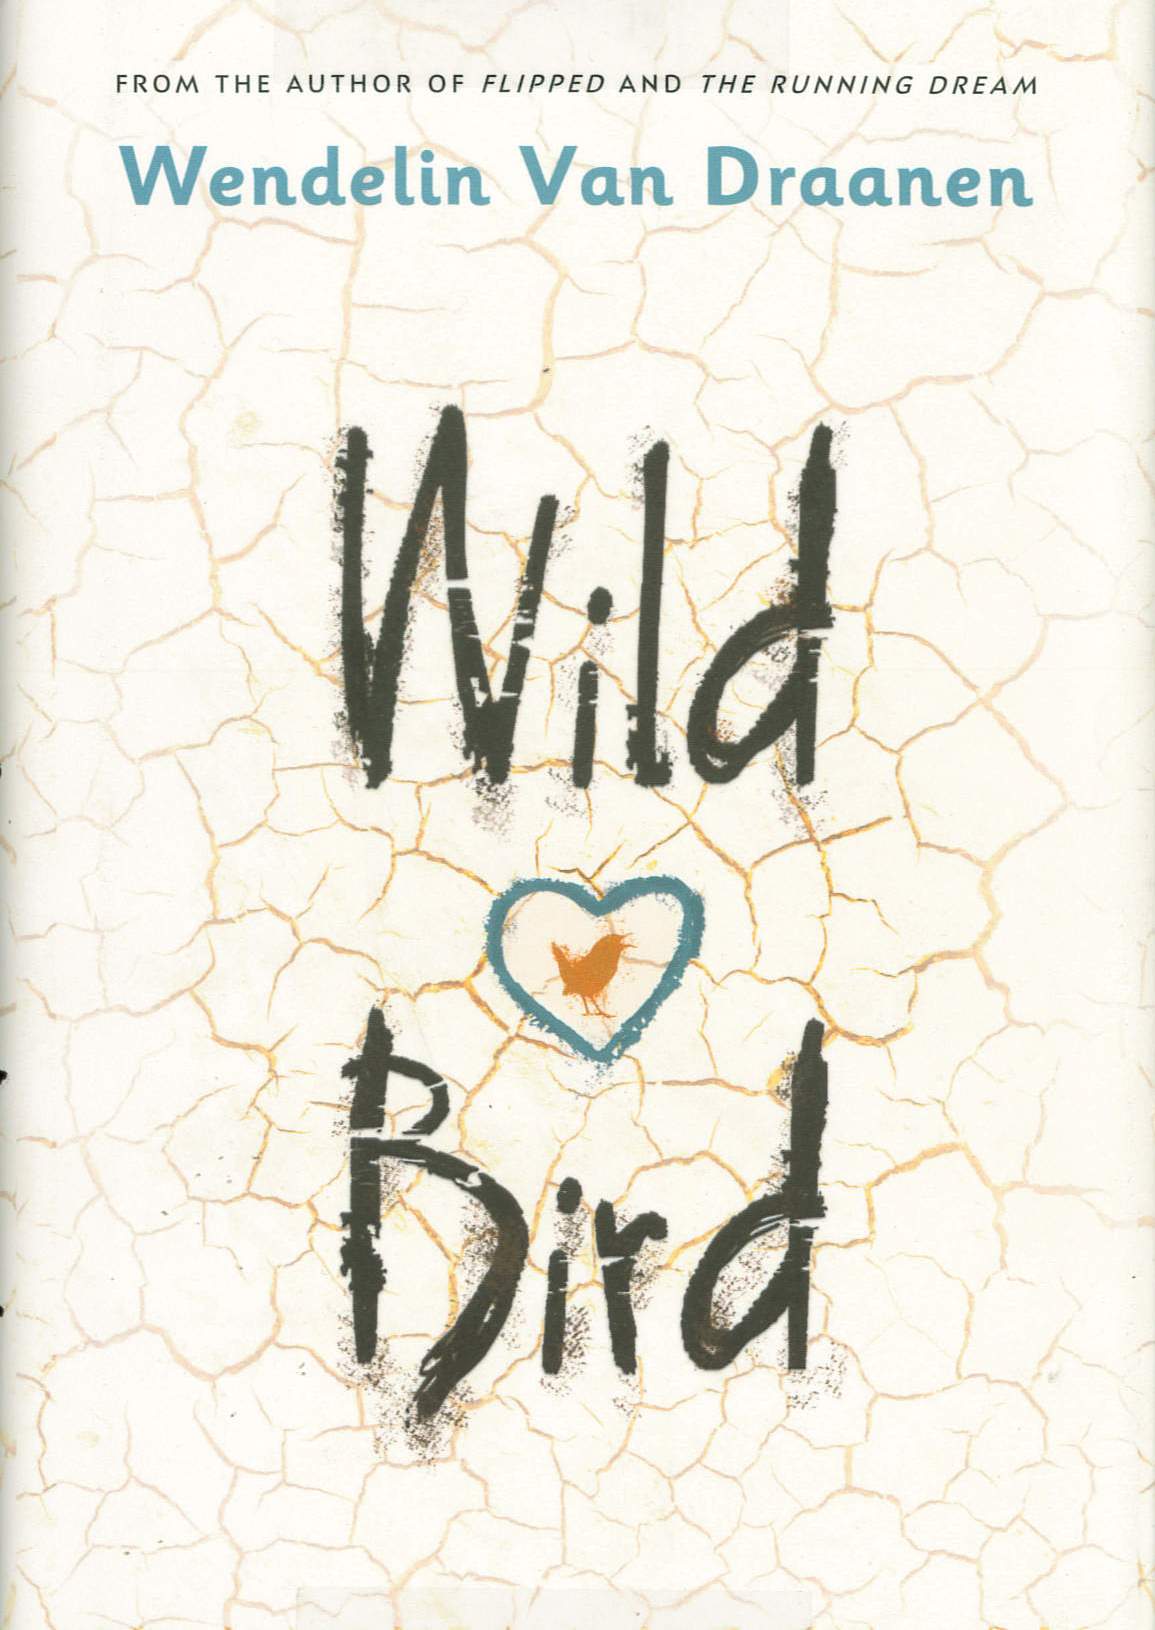 Wild bird /